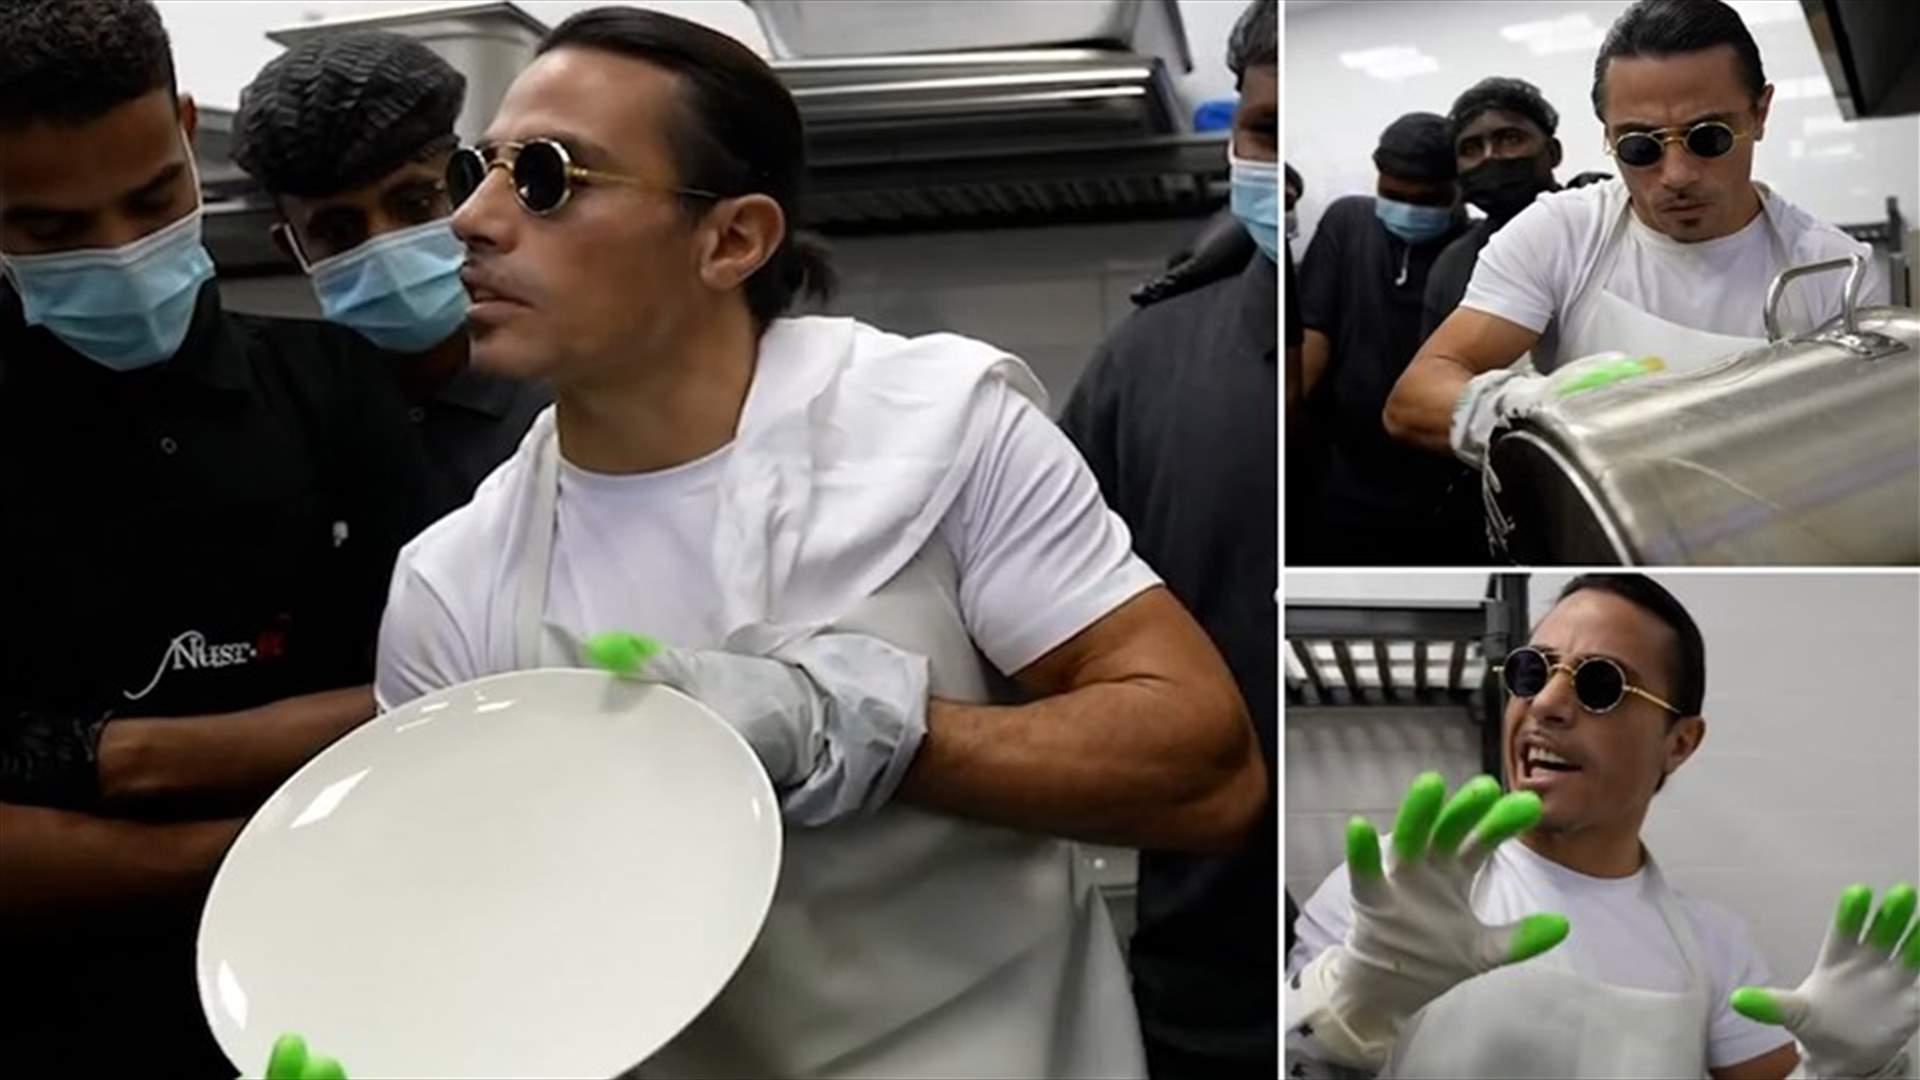 الشيف نصرت ينظف الأطباق... فيديو يشرح فيه للموظفين كيفية غسل الأواني